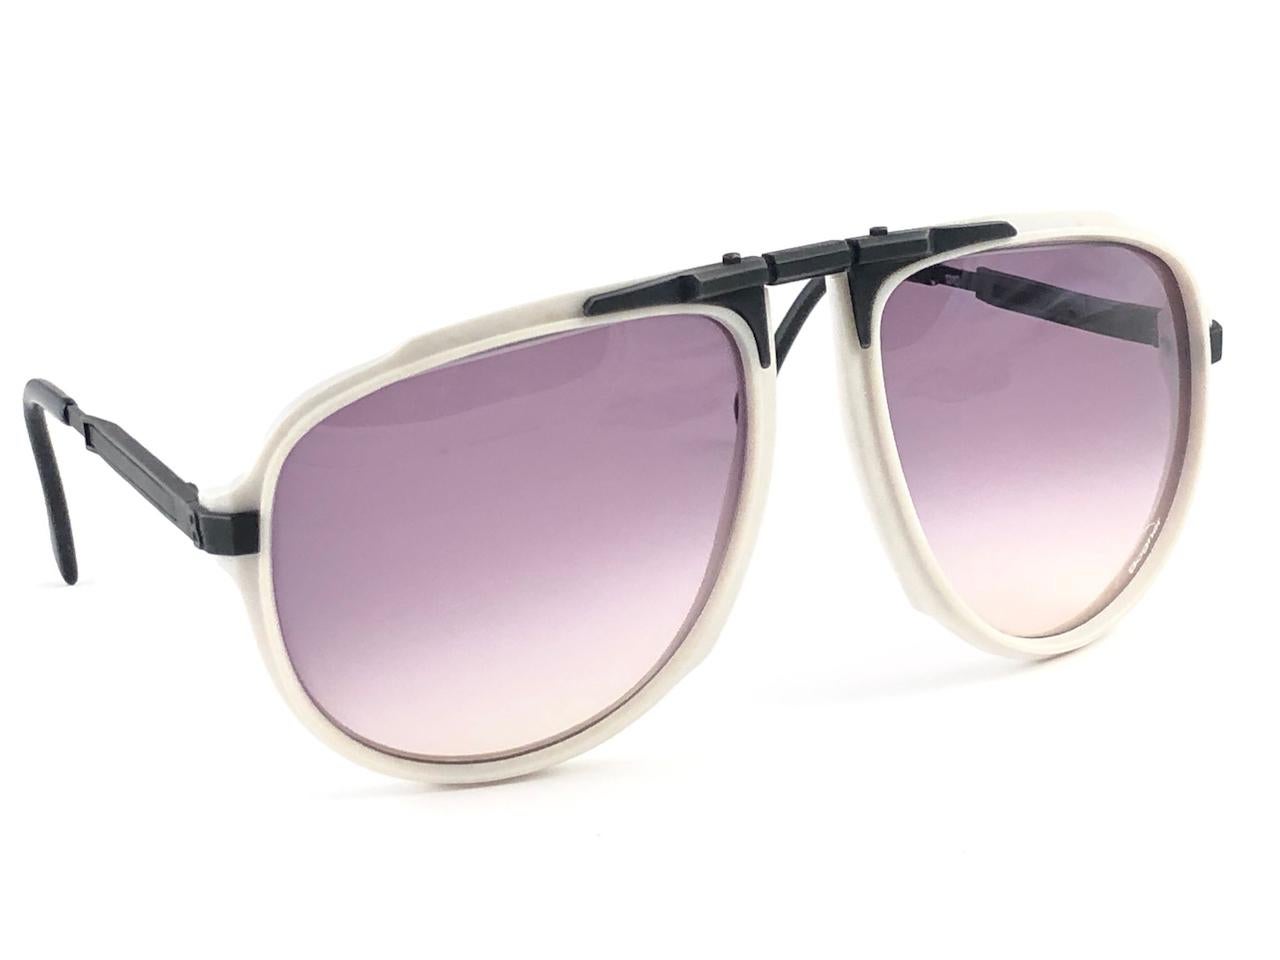 Men's New Vintage Bogner 7003 90 Black & White James Bond Roger Moore 007 Sunglasses